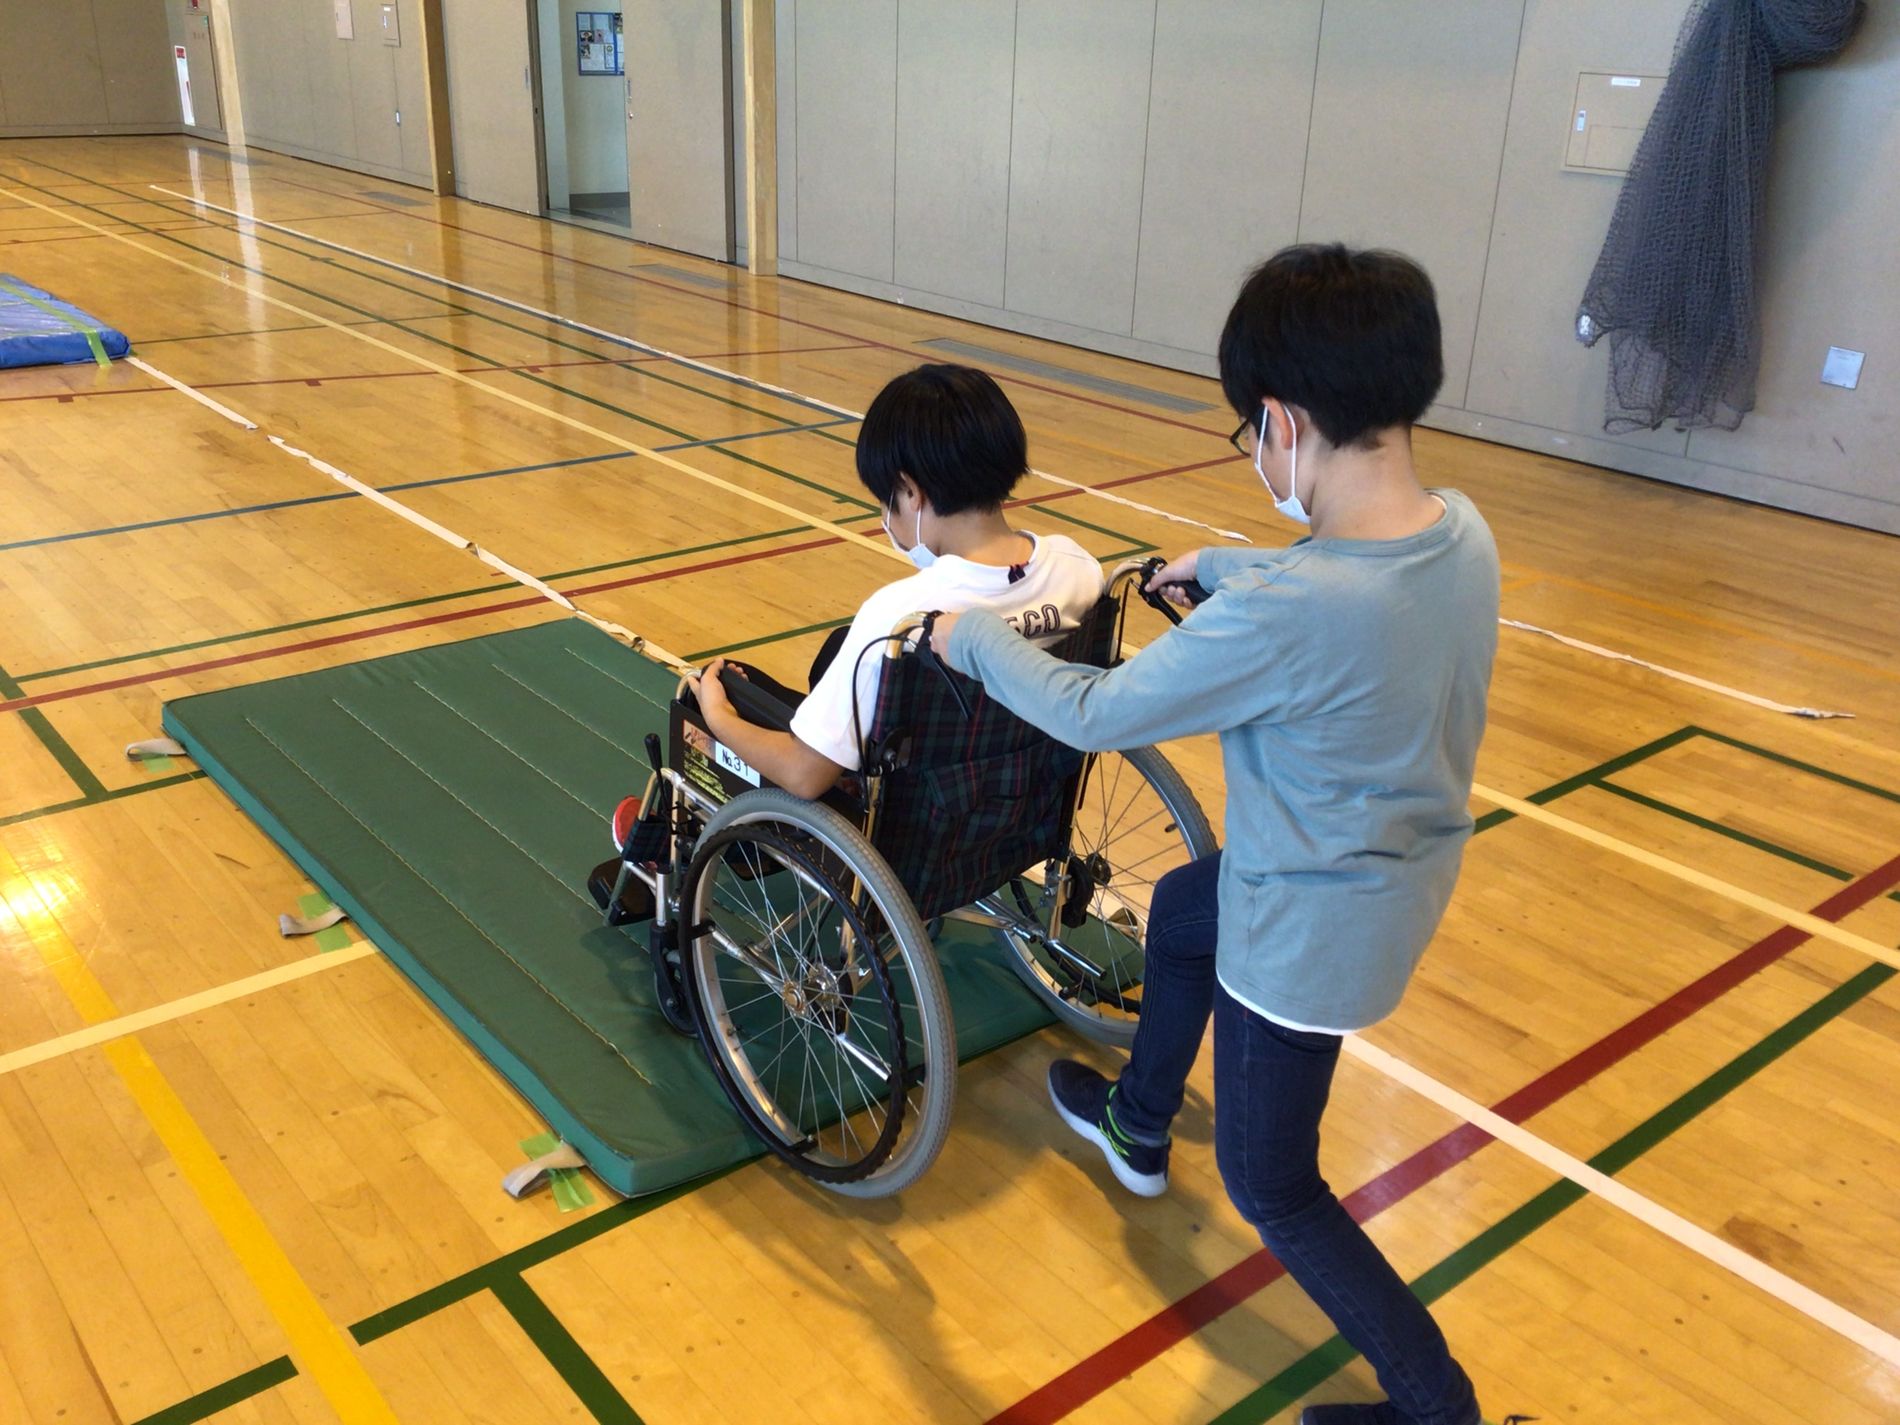 緑色のマットの上で、車椅子に座った男の子を膝を曲げながら押し、段差を乗り越える練習をしている男の子の写真